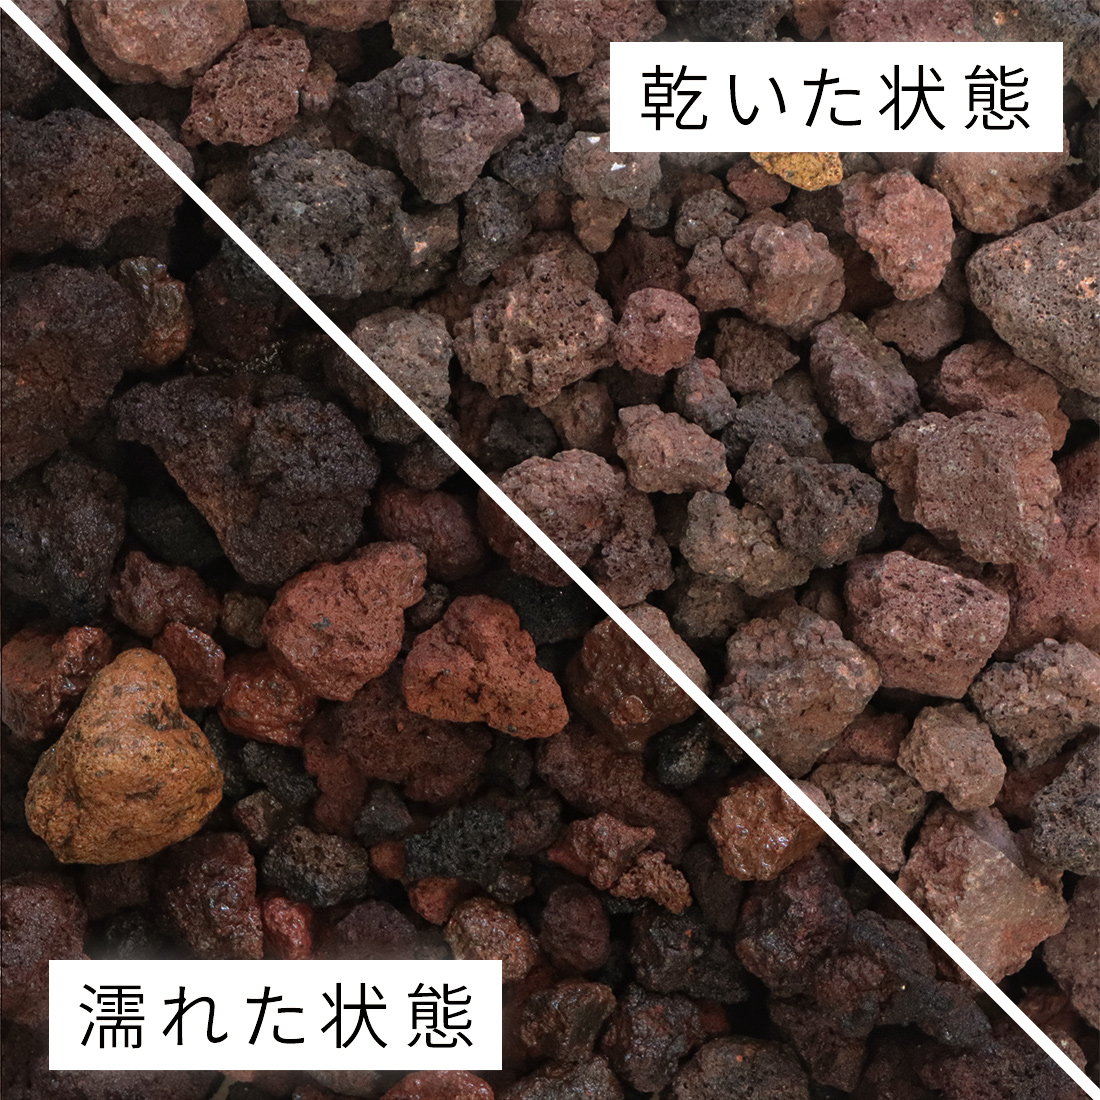 琉球石灰岩 100-200mm 50kg (10kg×5箱) - 1